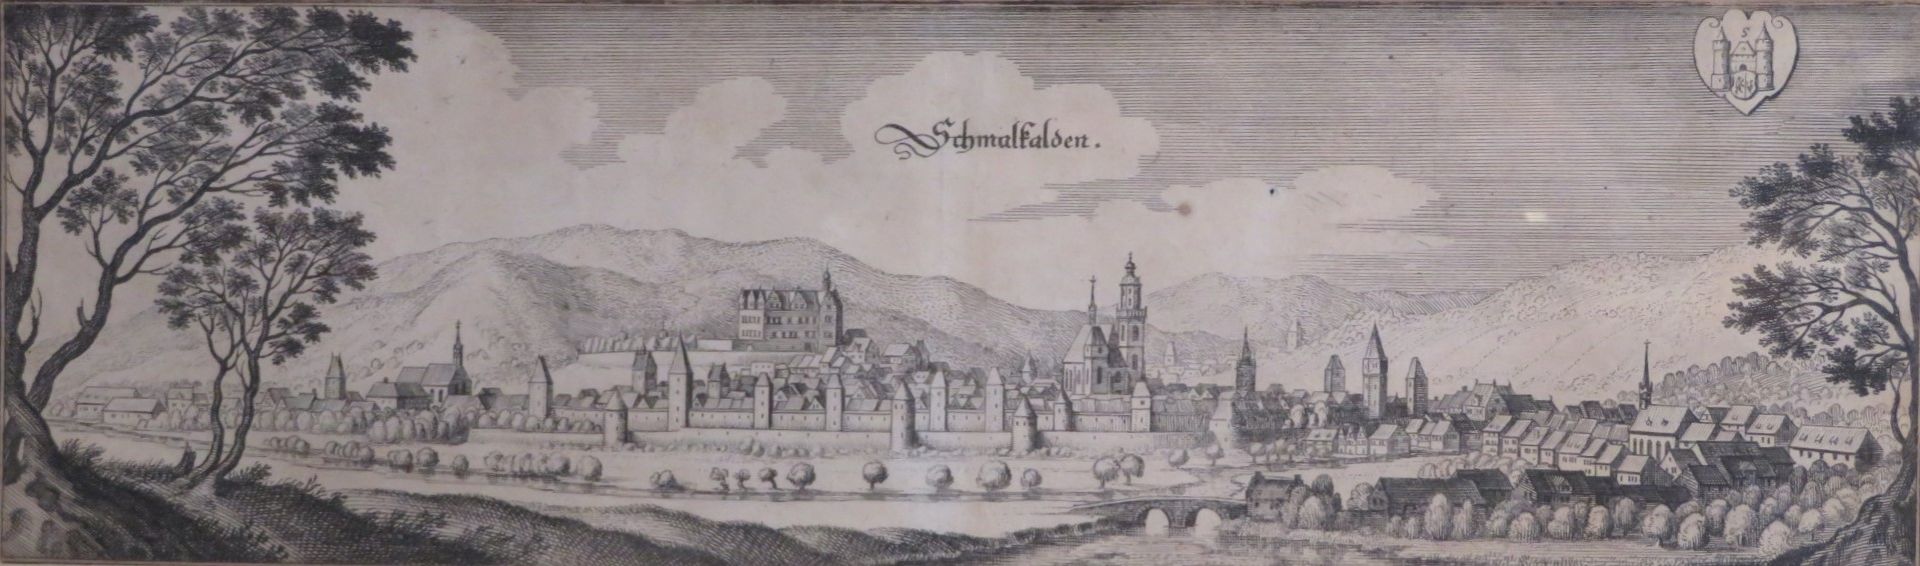 Kupferstich, 1. Hälfte 18. Jahrhundert, "Schmalkalden", 9,7 x 32,5 cm, R. [19,5 x 45 cm]